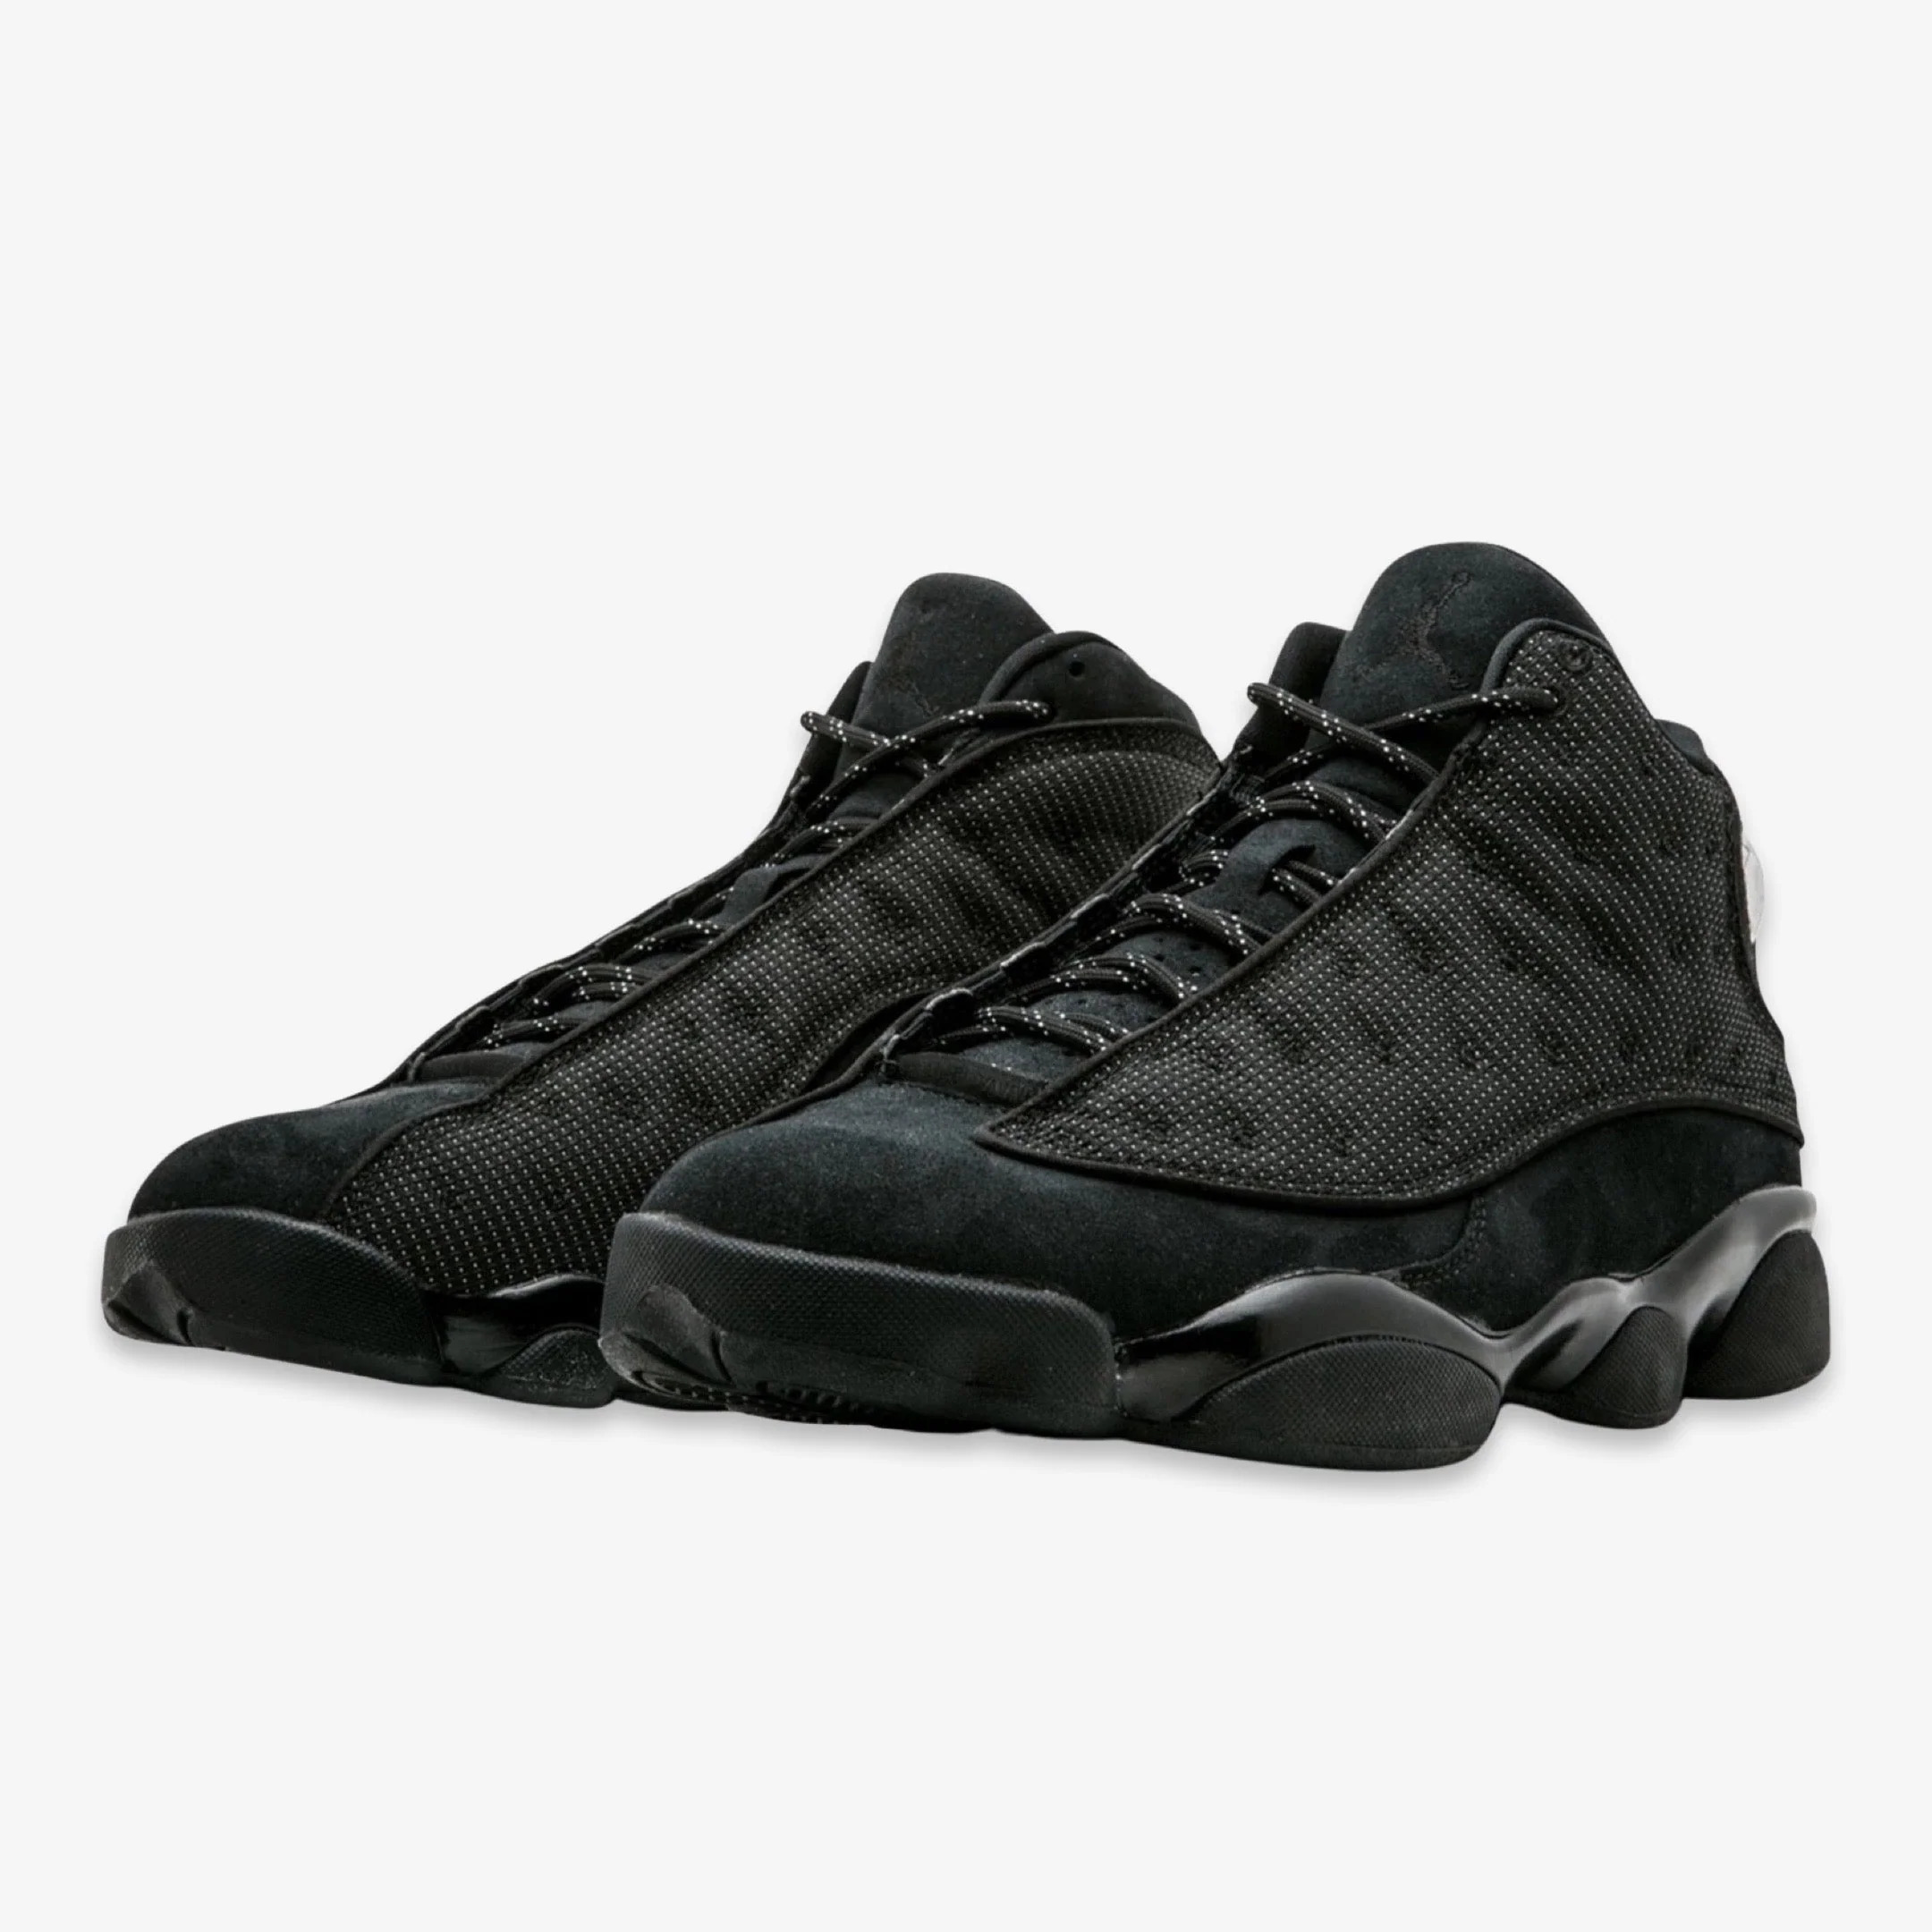 Nike Mens Air Jordan 13 Retro "Black Cat" Black/Anthracite 414571-011 - image 2 of 3